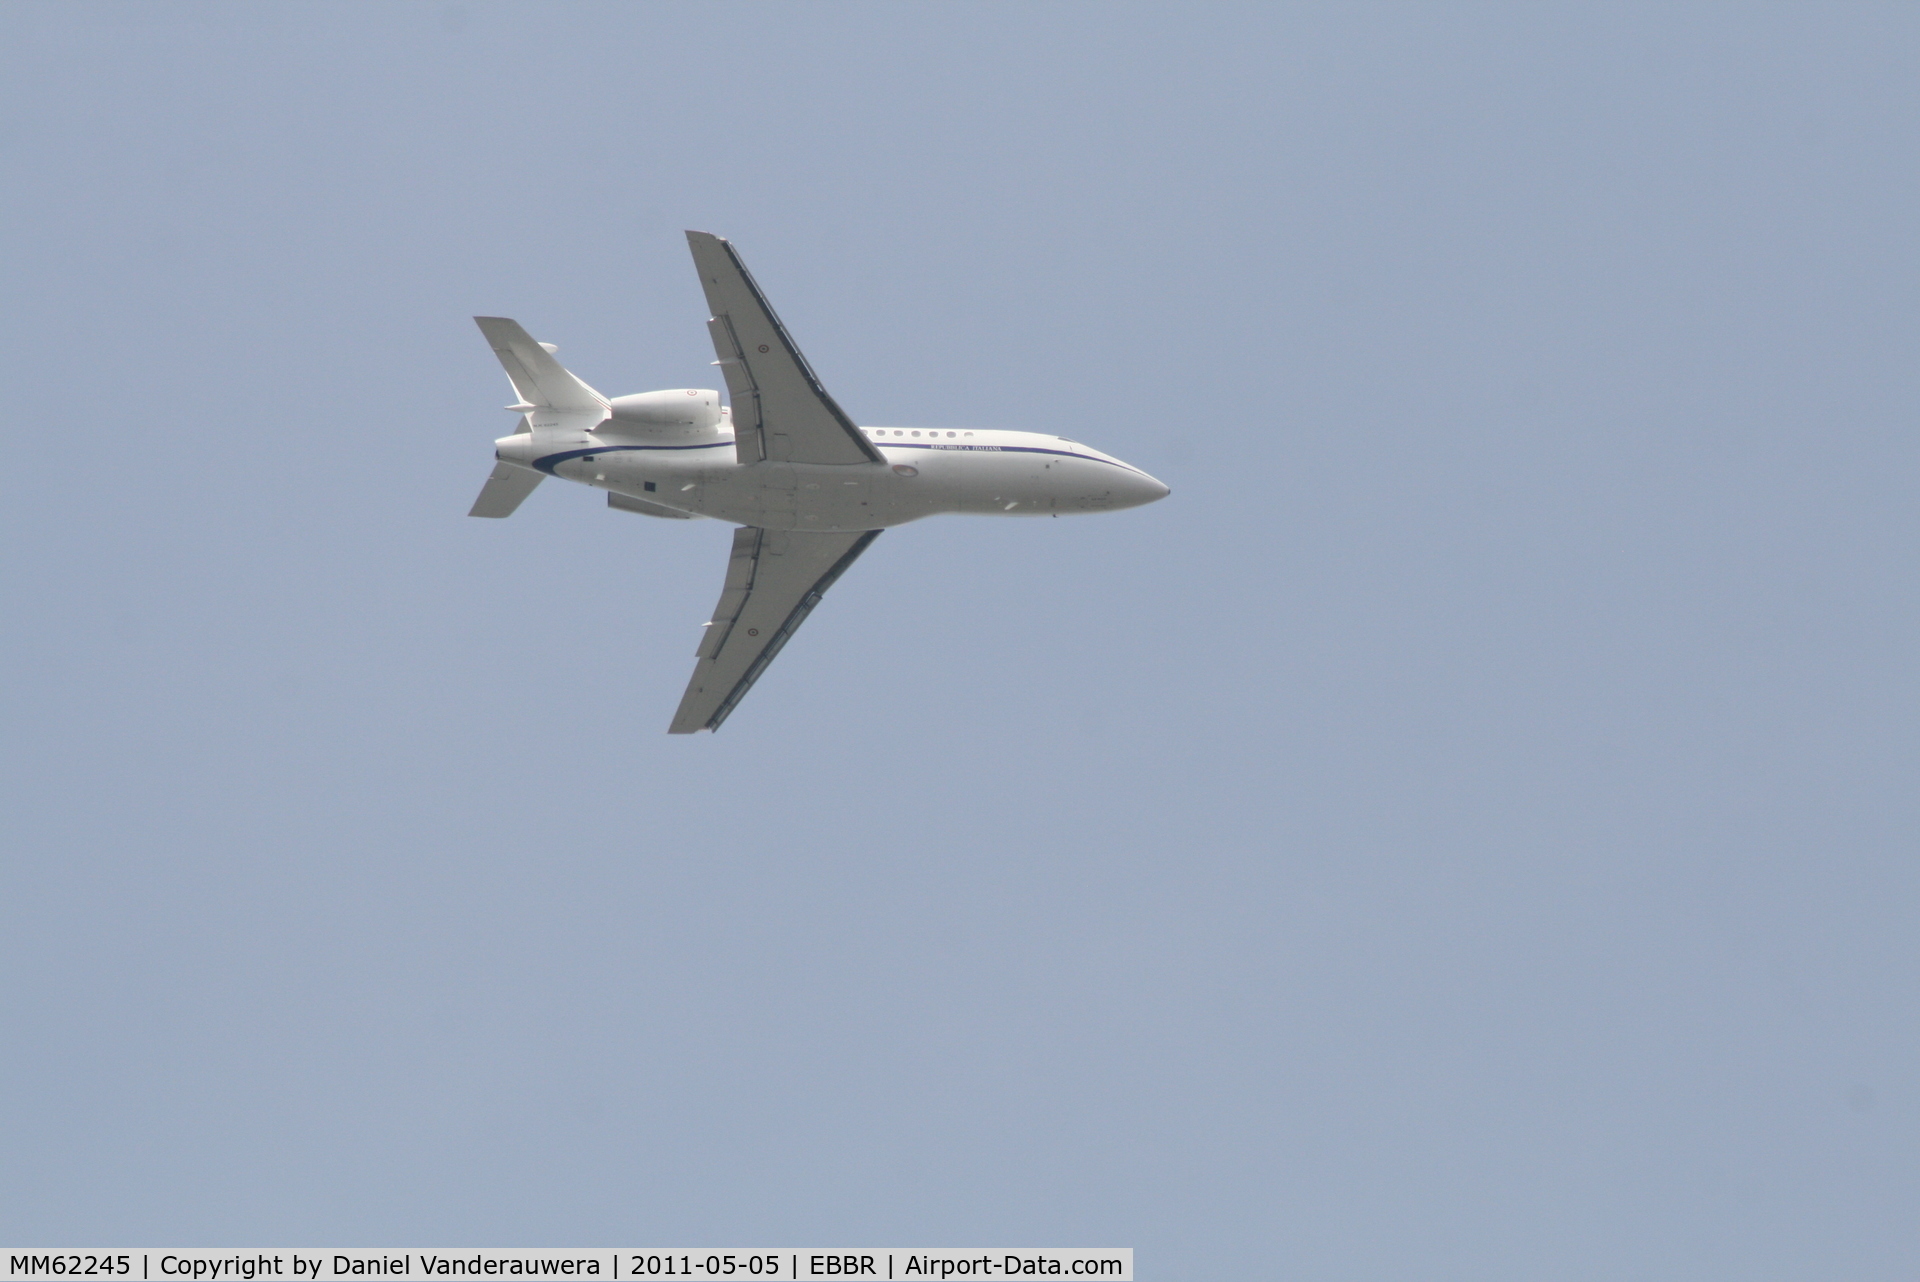 MM62245, 2005 Dassault Falcon 900EX C/N 156, On approach to RWY 07L/R